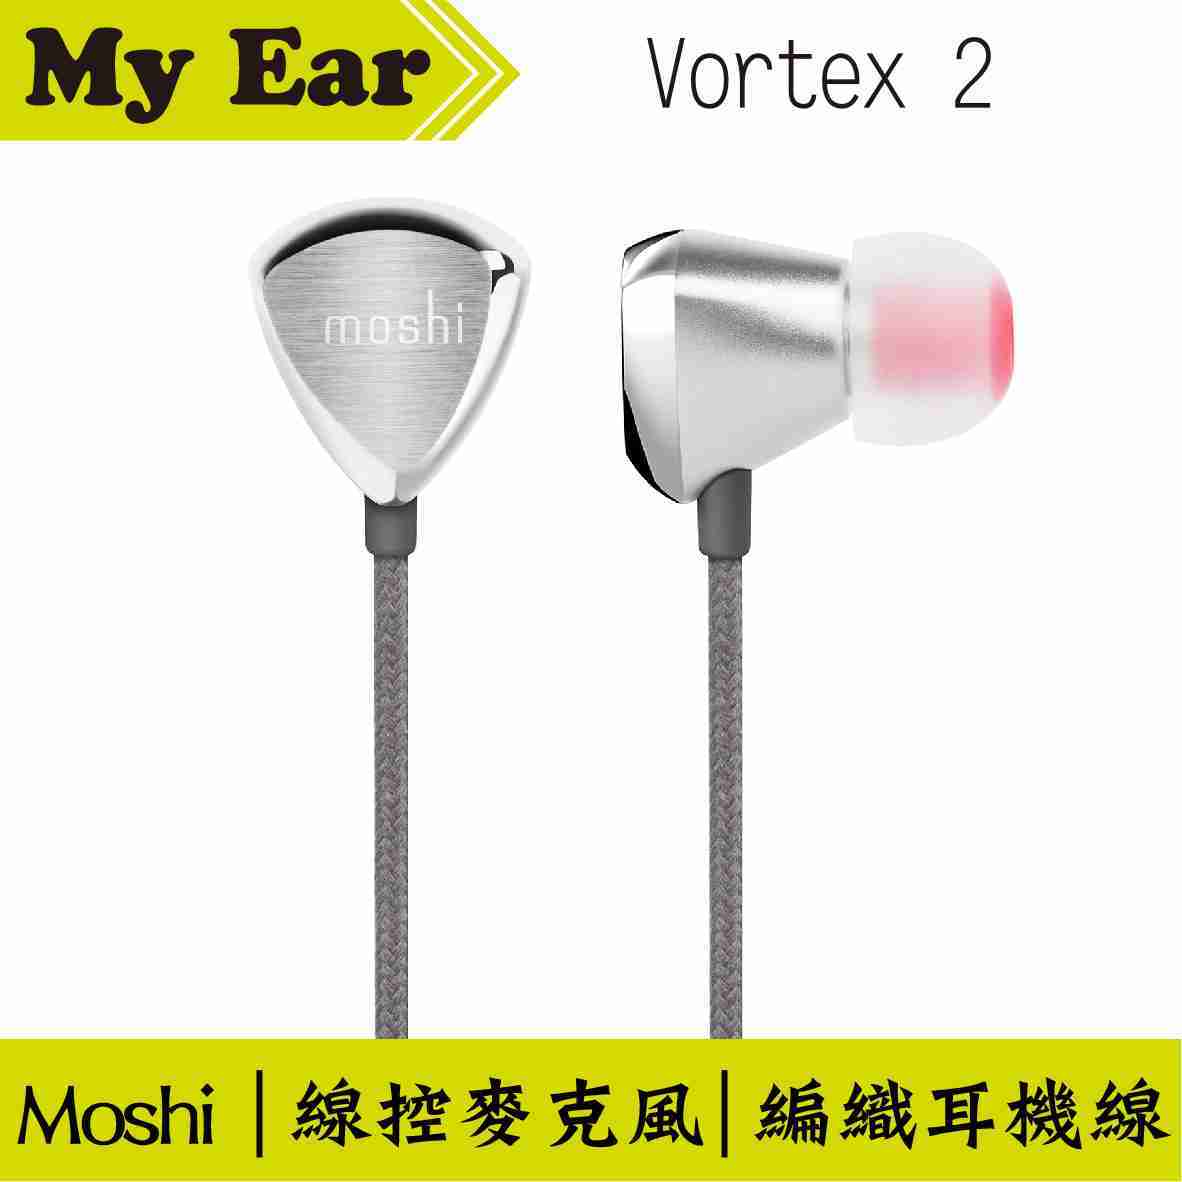 Moshi Vortex 2 麥克風 入耳式 耳機 Vortex2  | My Ear 耳機專門店